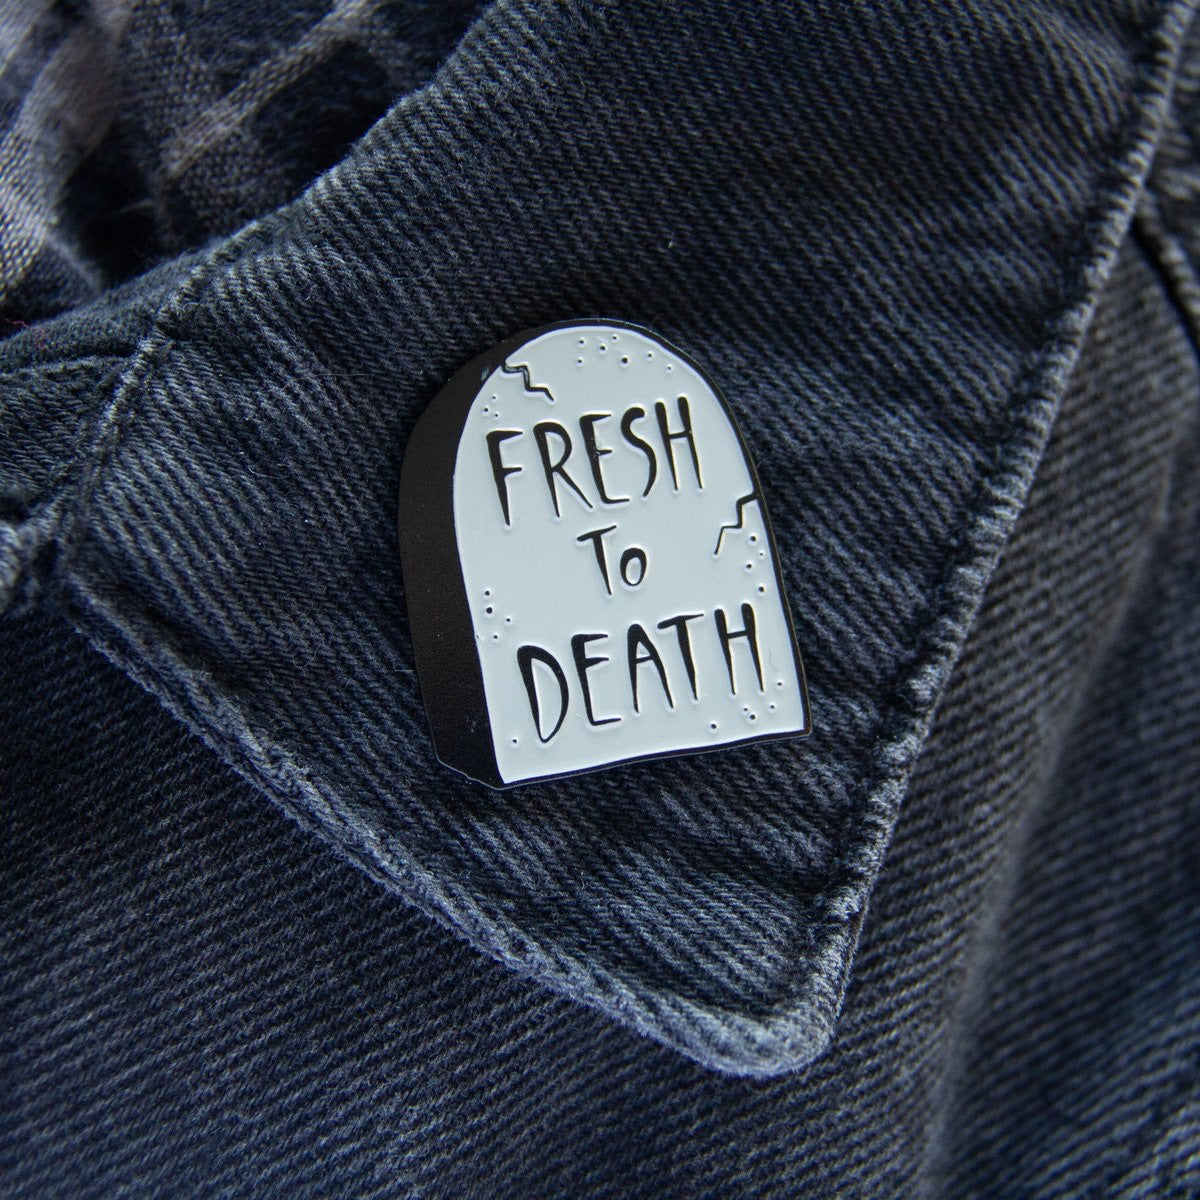 Ectogasm “Fresh To Death” Enamel Pin